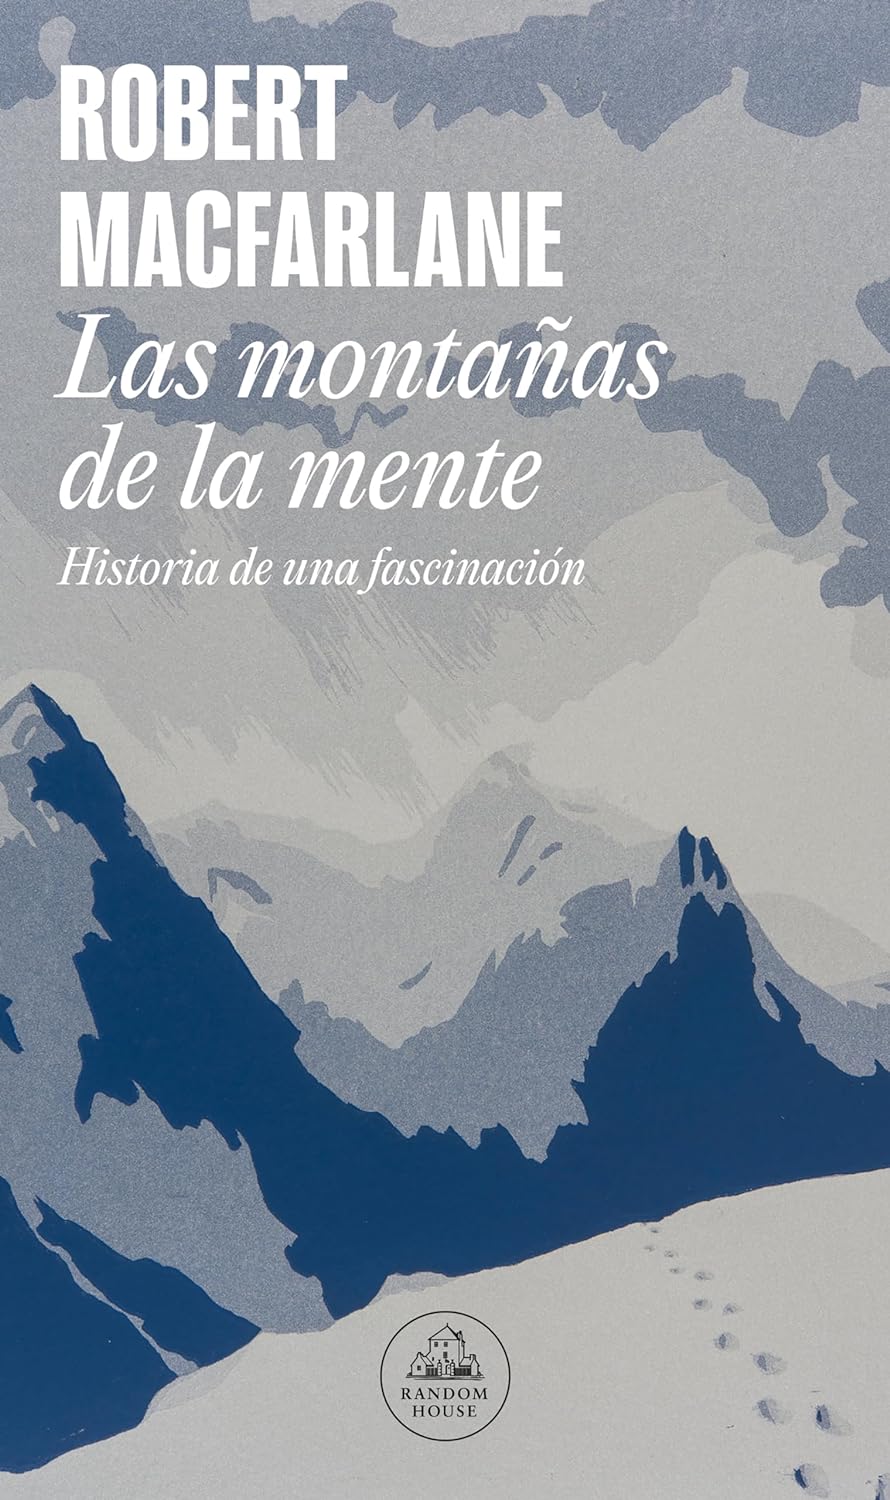 Las montañas de la mente: historia de una fascinación